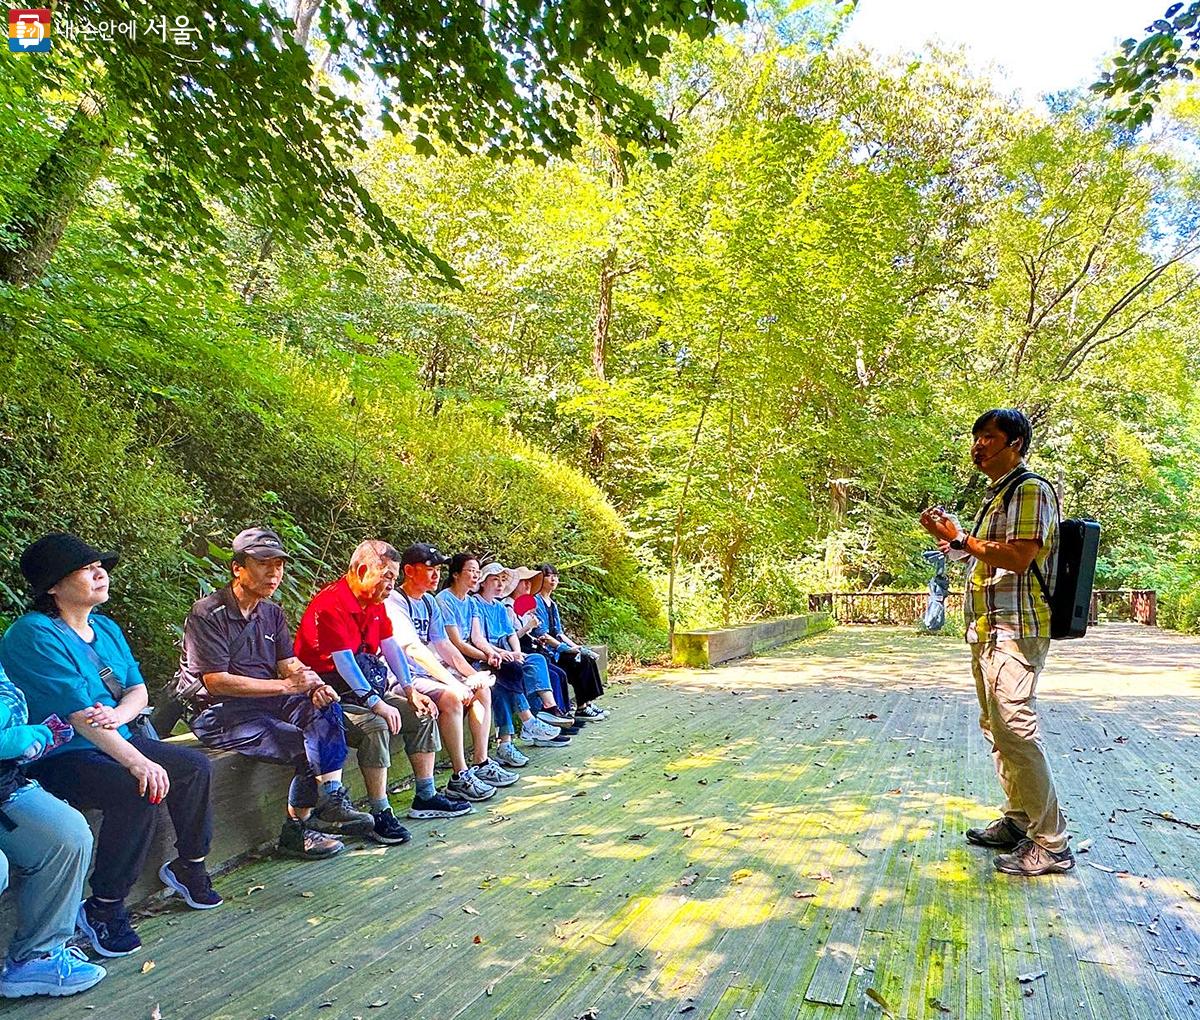 ‘이야기 작가와 함께하는 좋은 길 힐링 걷기’는 강북구의 지리적 특성을 활용한 숲치유 걷기 프로그램이다. ⓒ김수정